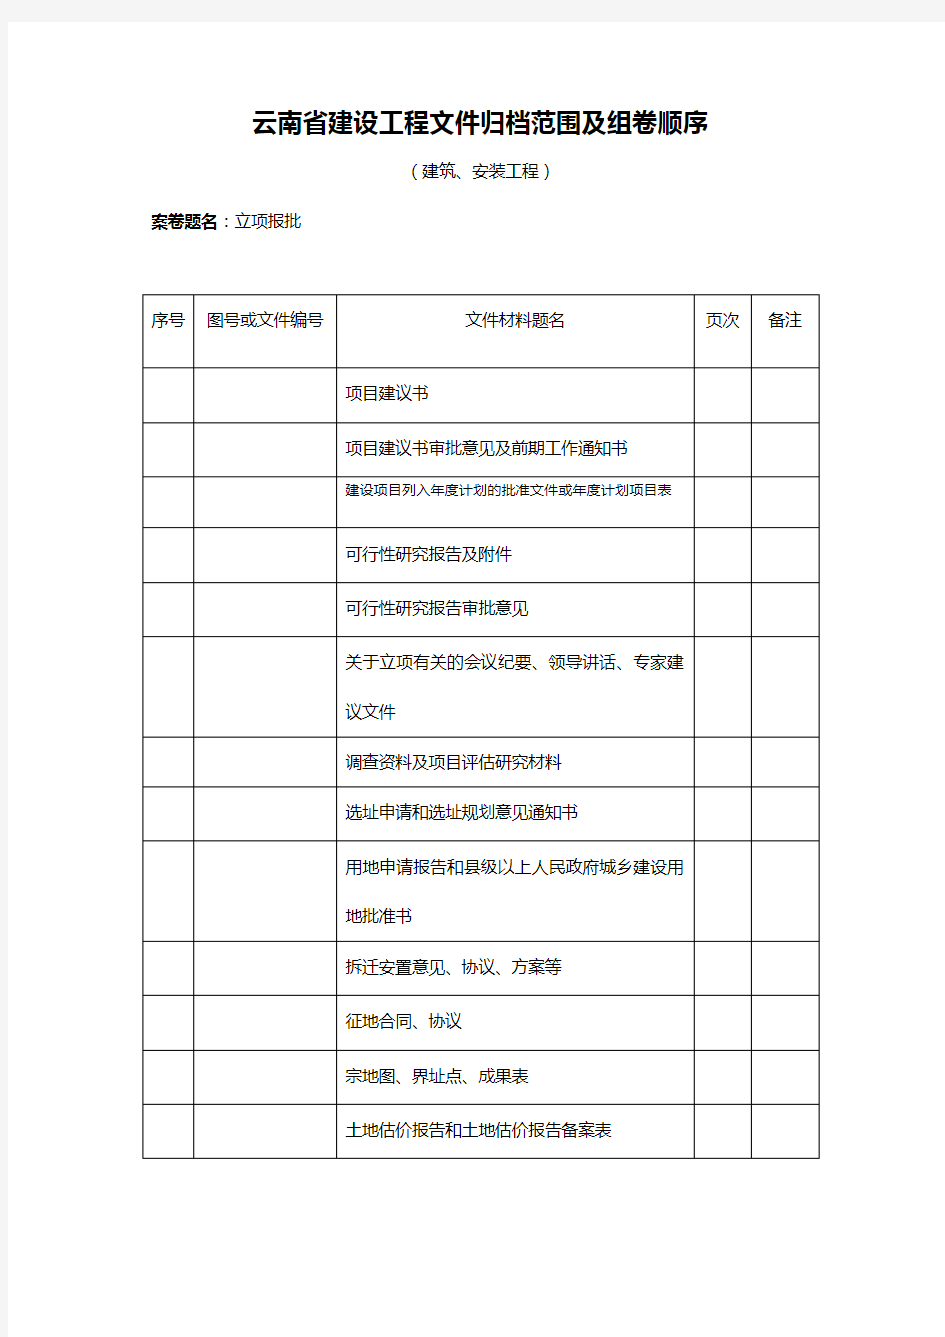 【建筑工程管理】云南省建设工程文件归档范围及组卷顺序